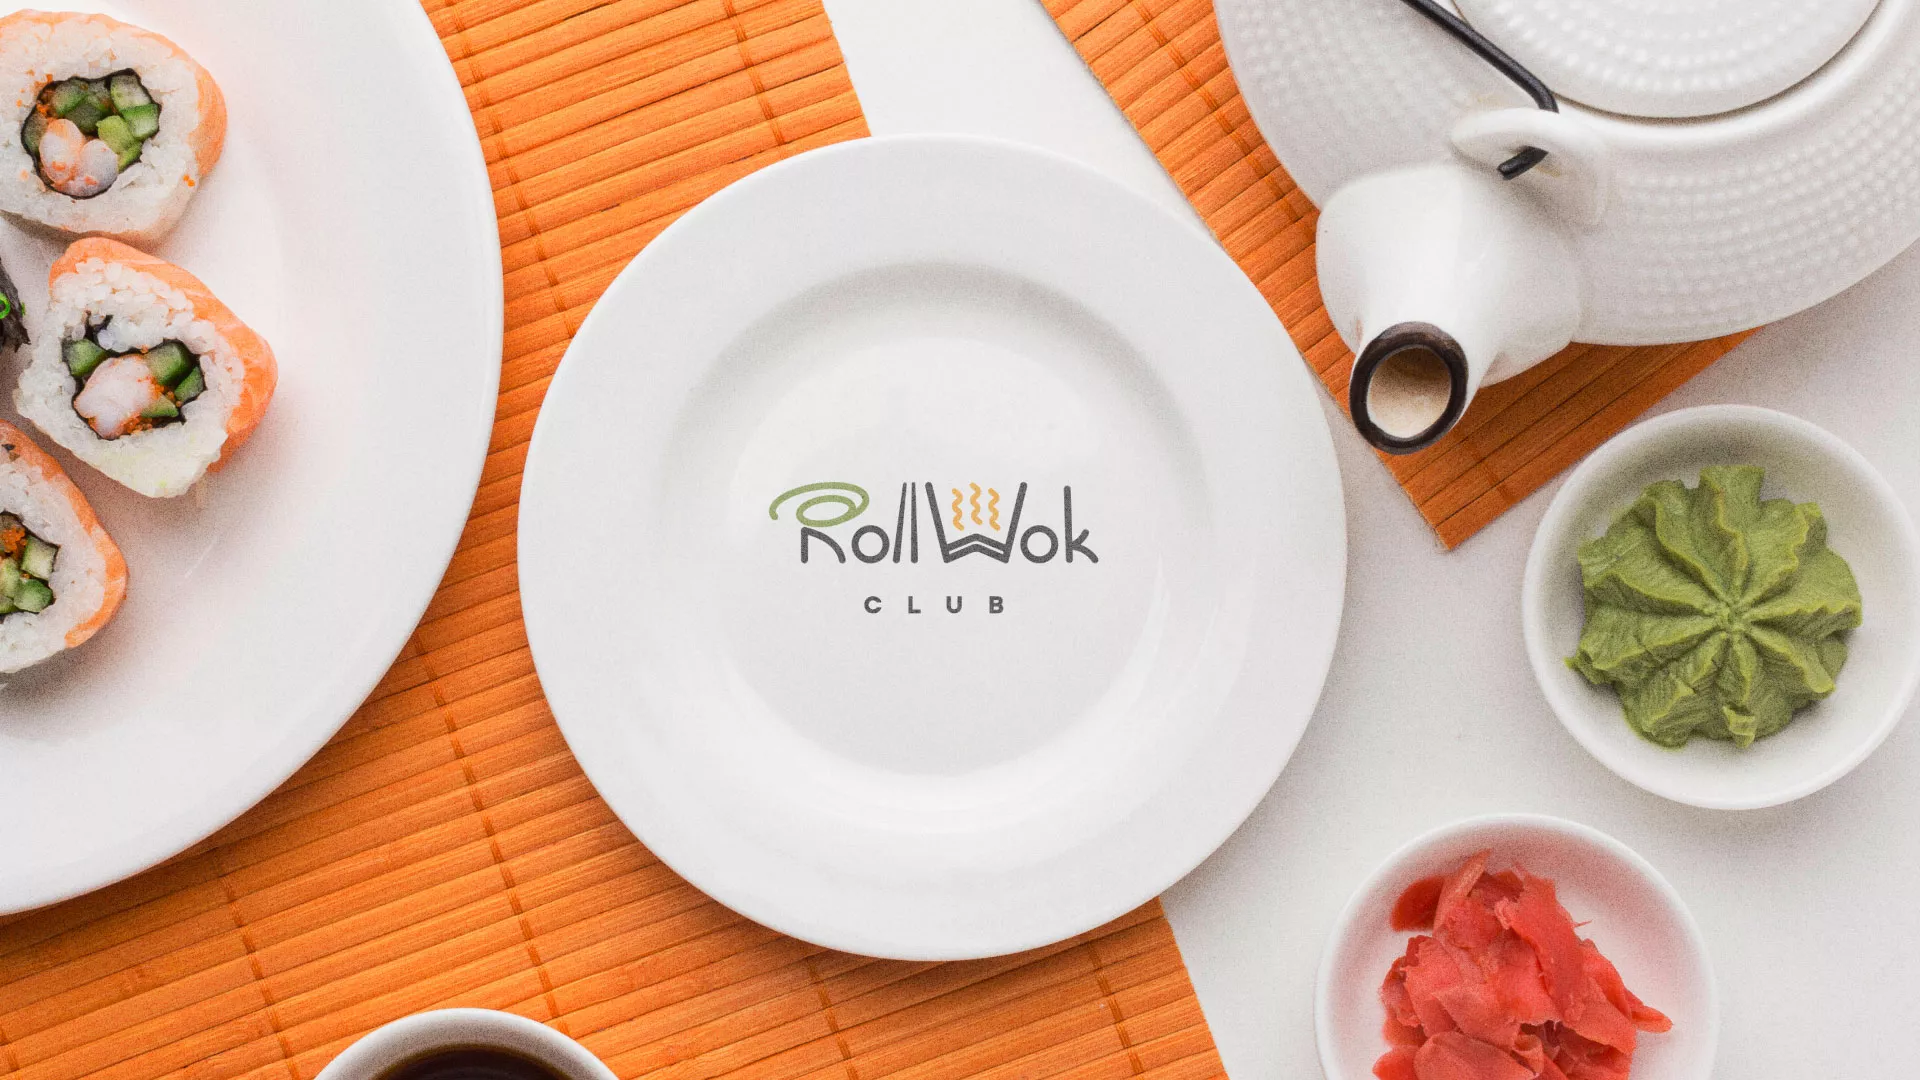 Разработка логотипа и фирменного стиля суши-бара «Roll Wok Club» в Островном